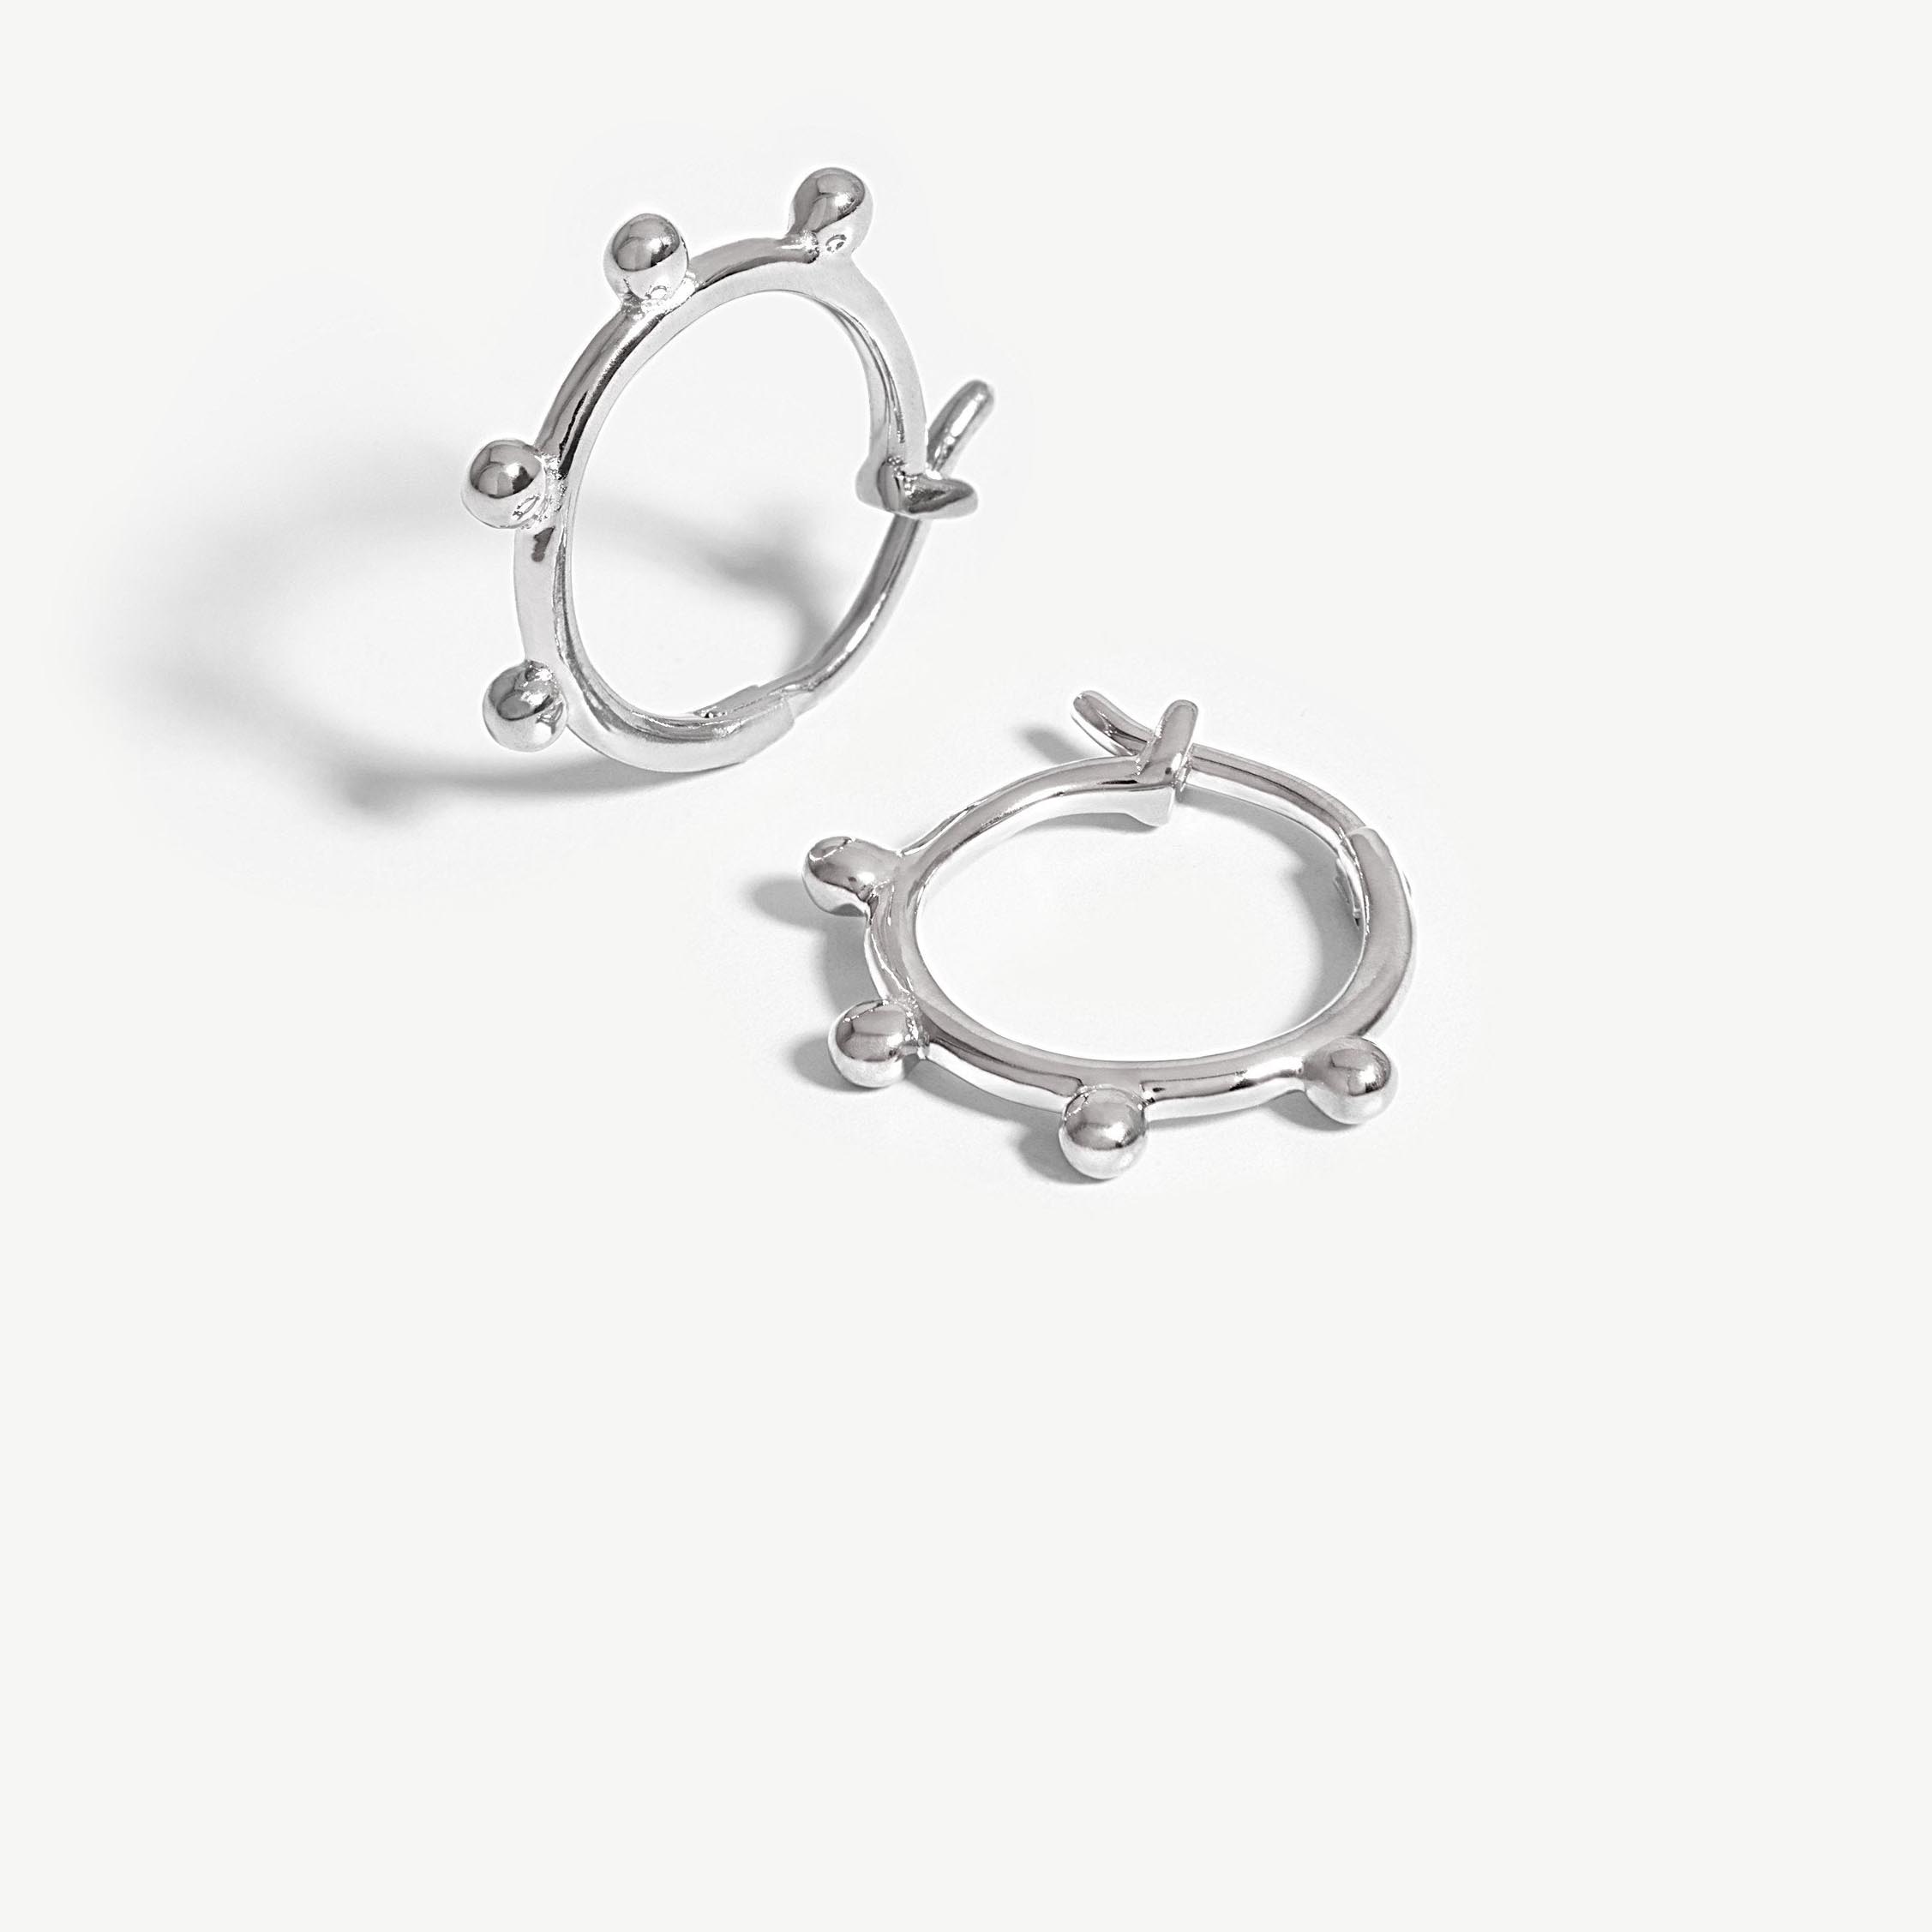 Brugerdefinerede 925 sølv øreringe mode 925 sølv smykker producent